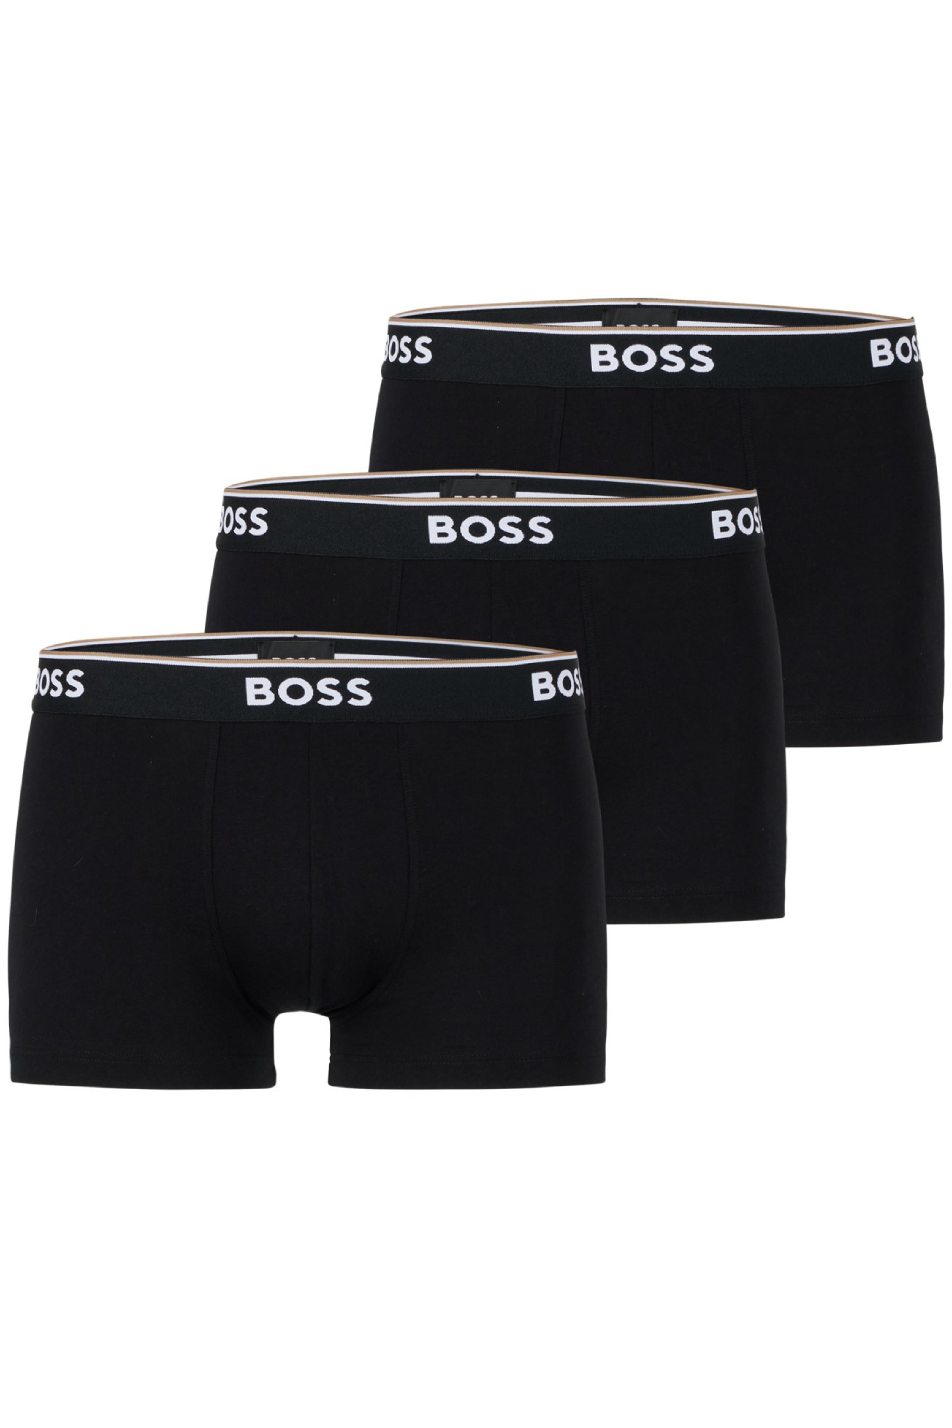 Boss 3 Pack Men's Trunk